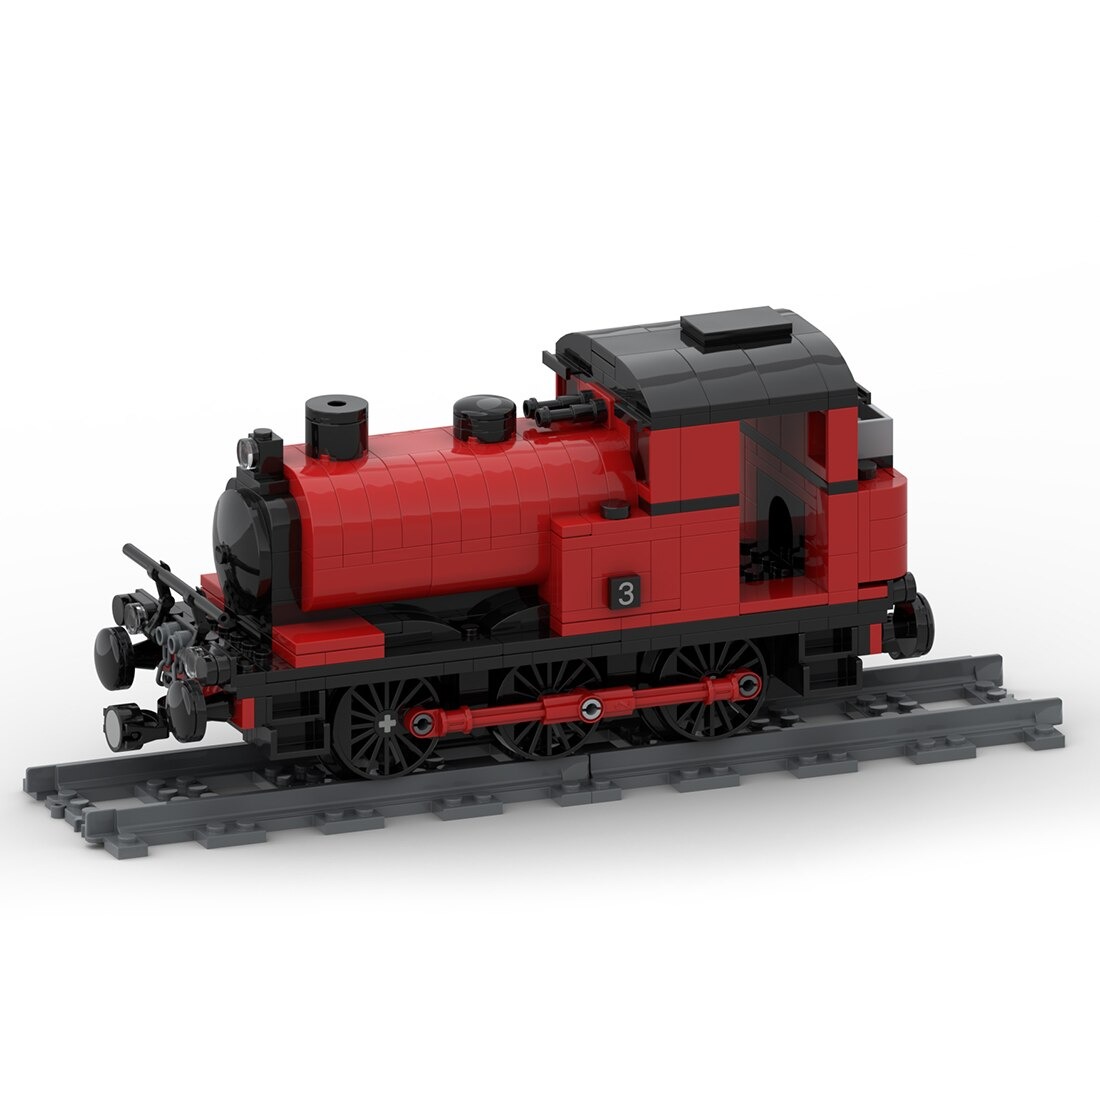 Saddle Tank Engine Train Moc 42439 6